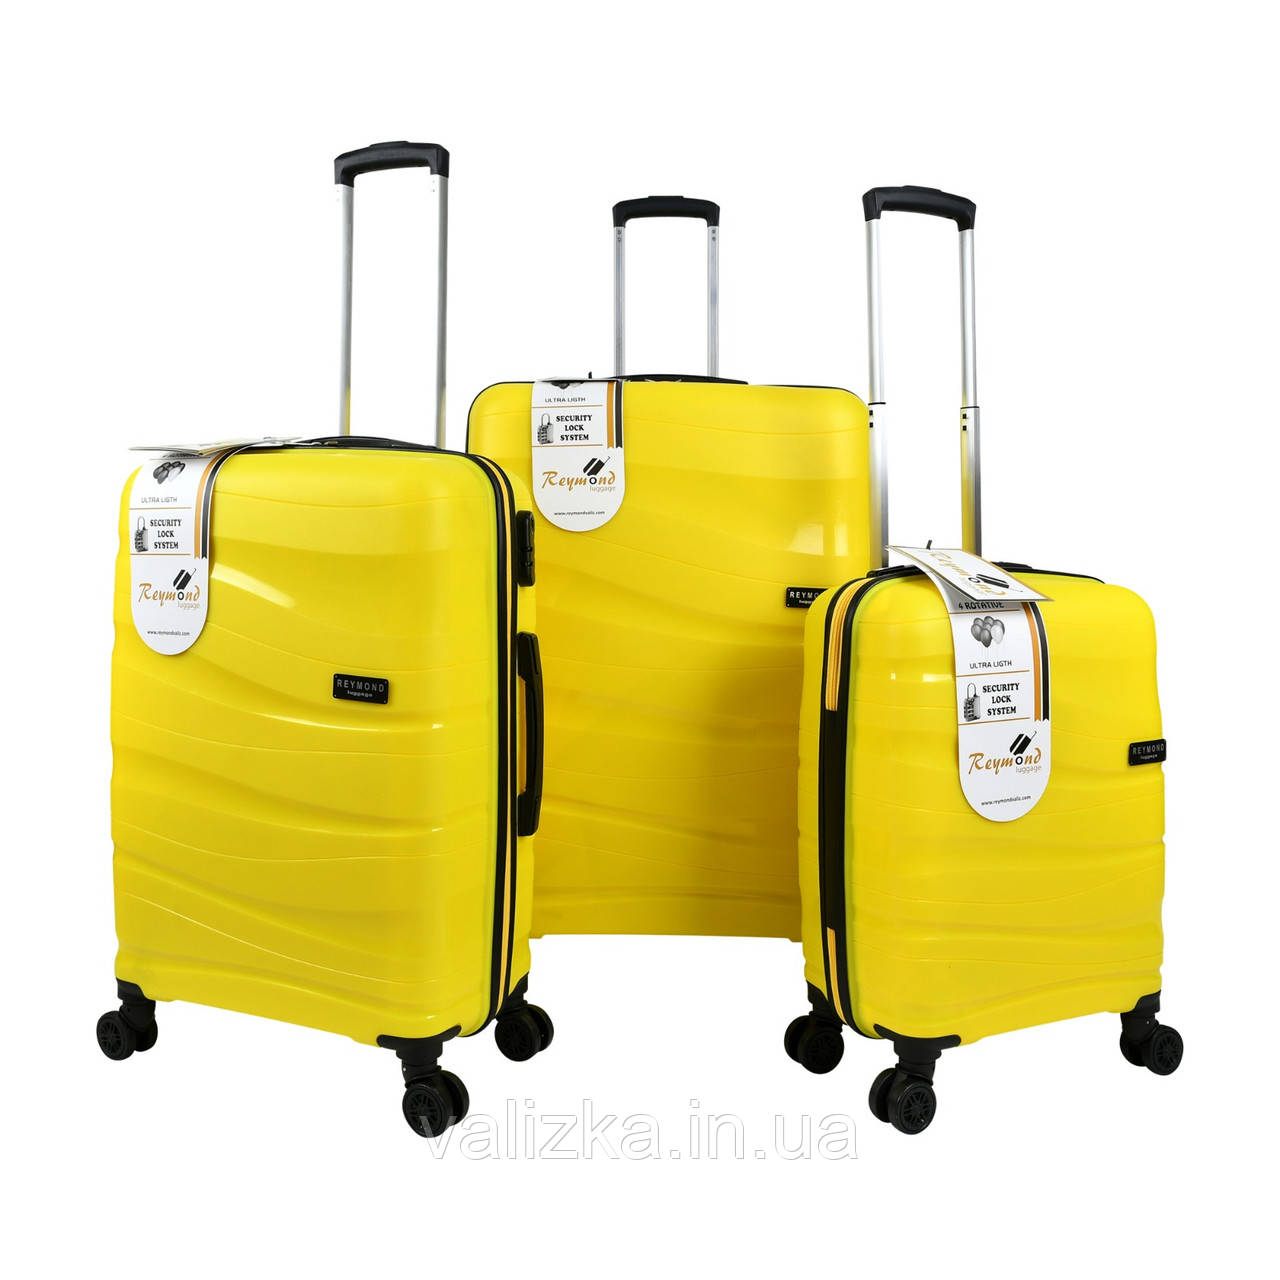 Комплект пластиковых чемоданов из полипропилена : большой, средний, маленький